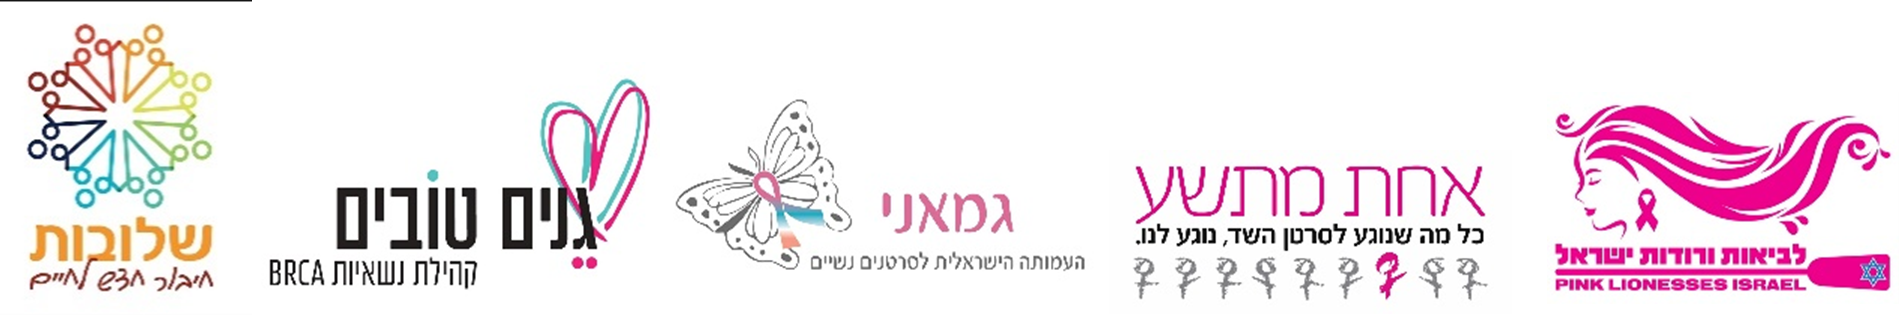 ארגונים שותפים בקואליציה הוורודה (מימין לשמאל): לביאות ורודות, אחת מתשע, גמאני - העמותה הישראלית לסרטנים נשיים, גנים טובים - קהילת נשאיות BRCA, שלובות - חיבור חדש לחיים